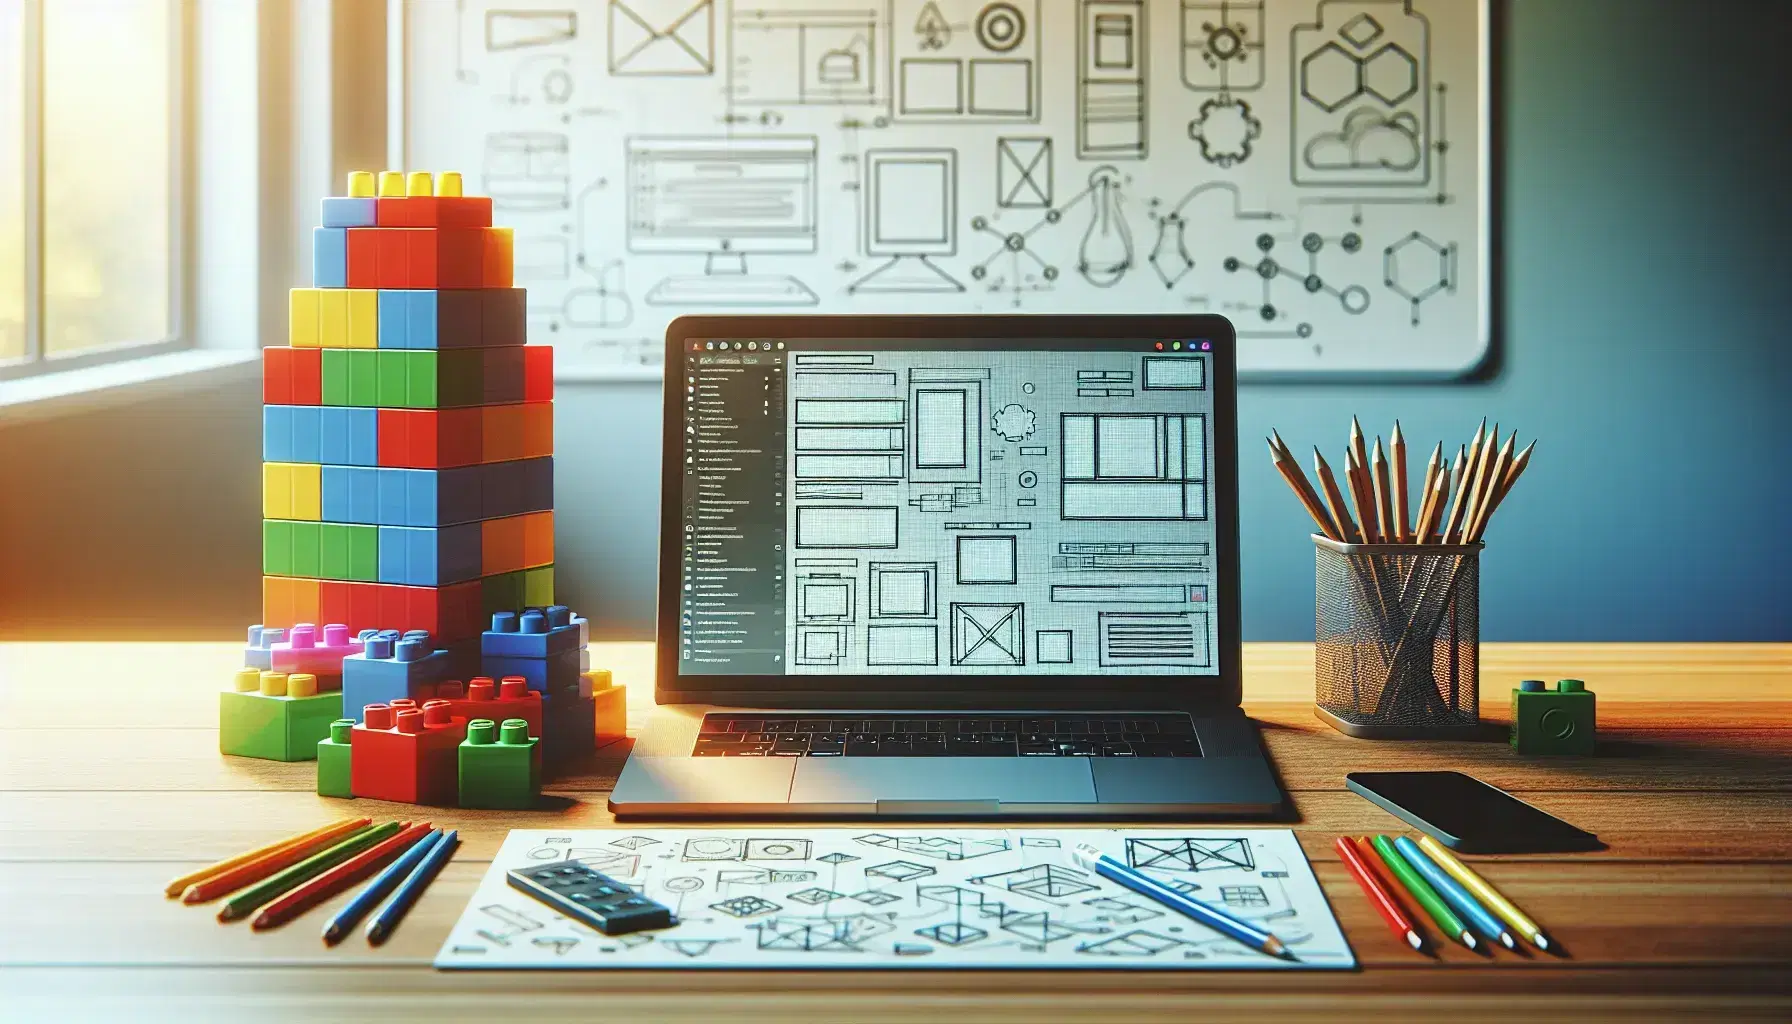 Escritorio de trabajo iluminado con laptop abierto mostrando interfaz de usuario, bloques de construcción de colores y hoja con figuras geométricas, lápices y regla metálica, fondo con pizarra y diagramas.